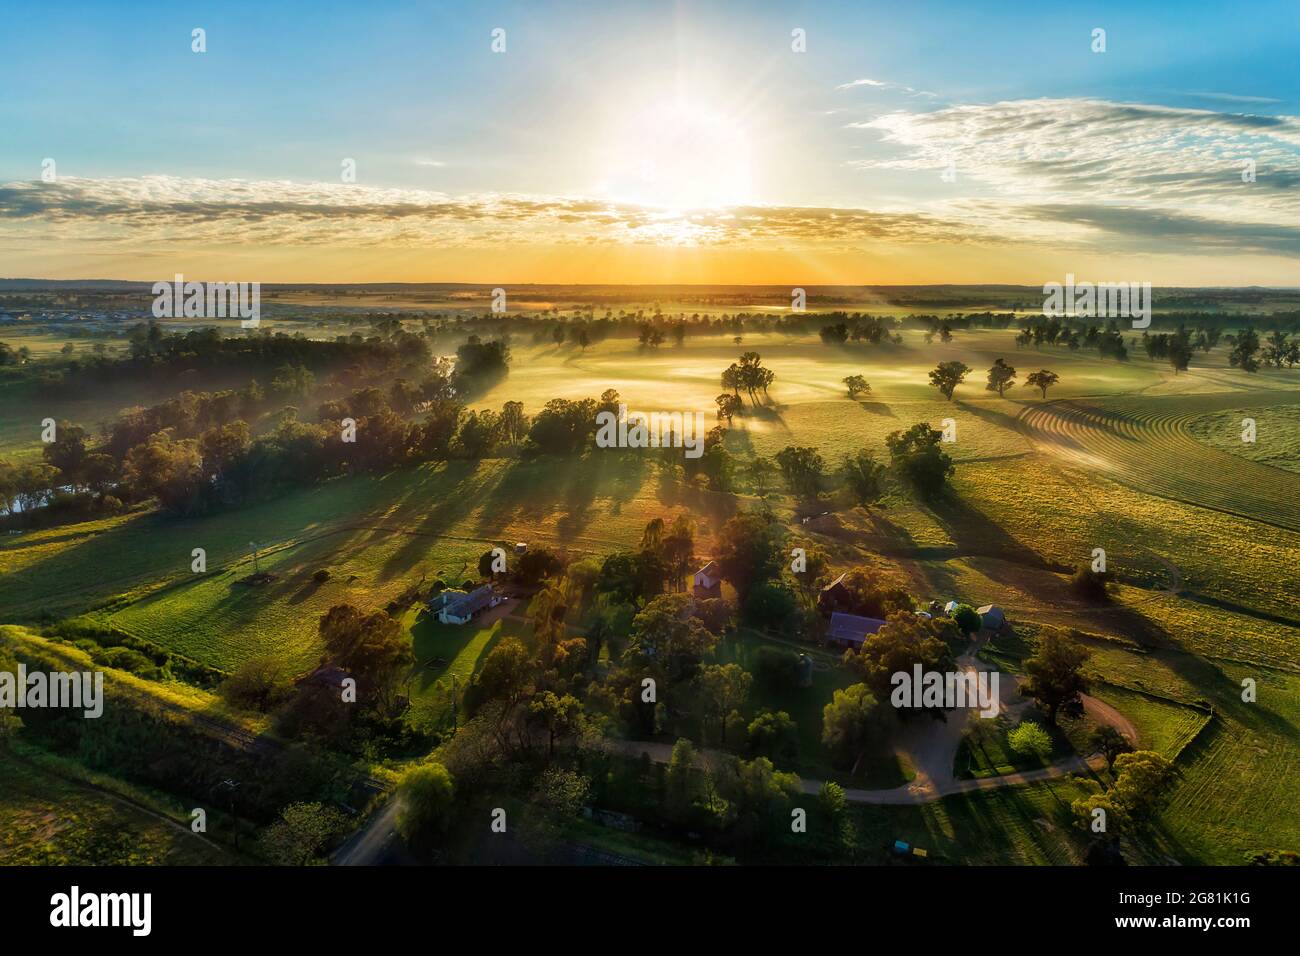 Abgeschiedenes Gehöft auf landwirtschaftlichen Kulturfeldern in der Nähe des Macquarie River in der australischen Stadt Dubbo - Sonnenaufgangsansicht aus der Luft. Stockfoto